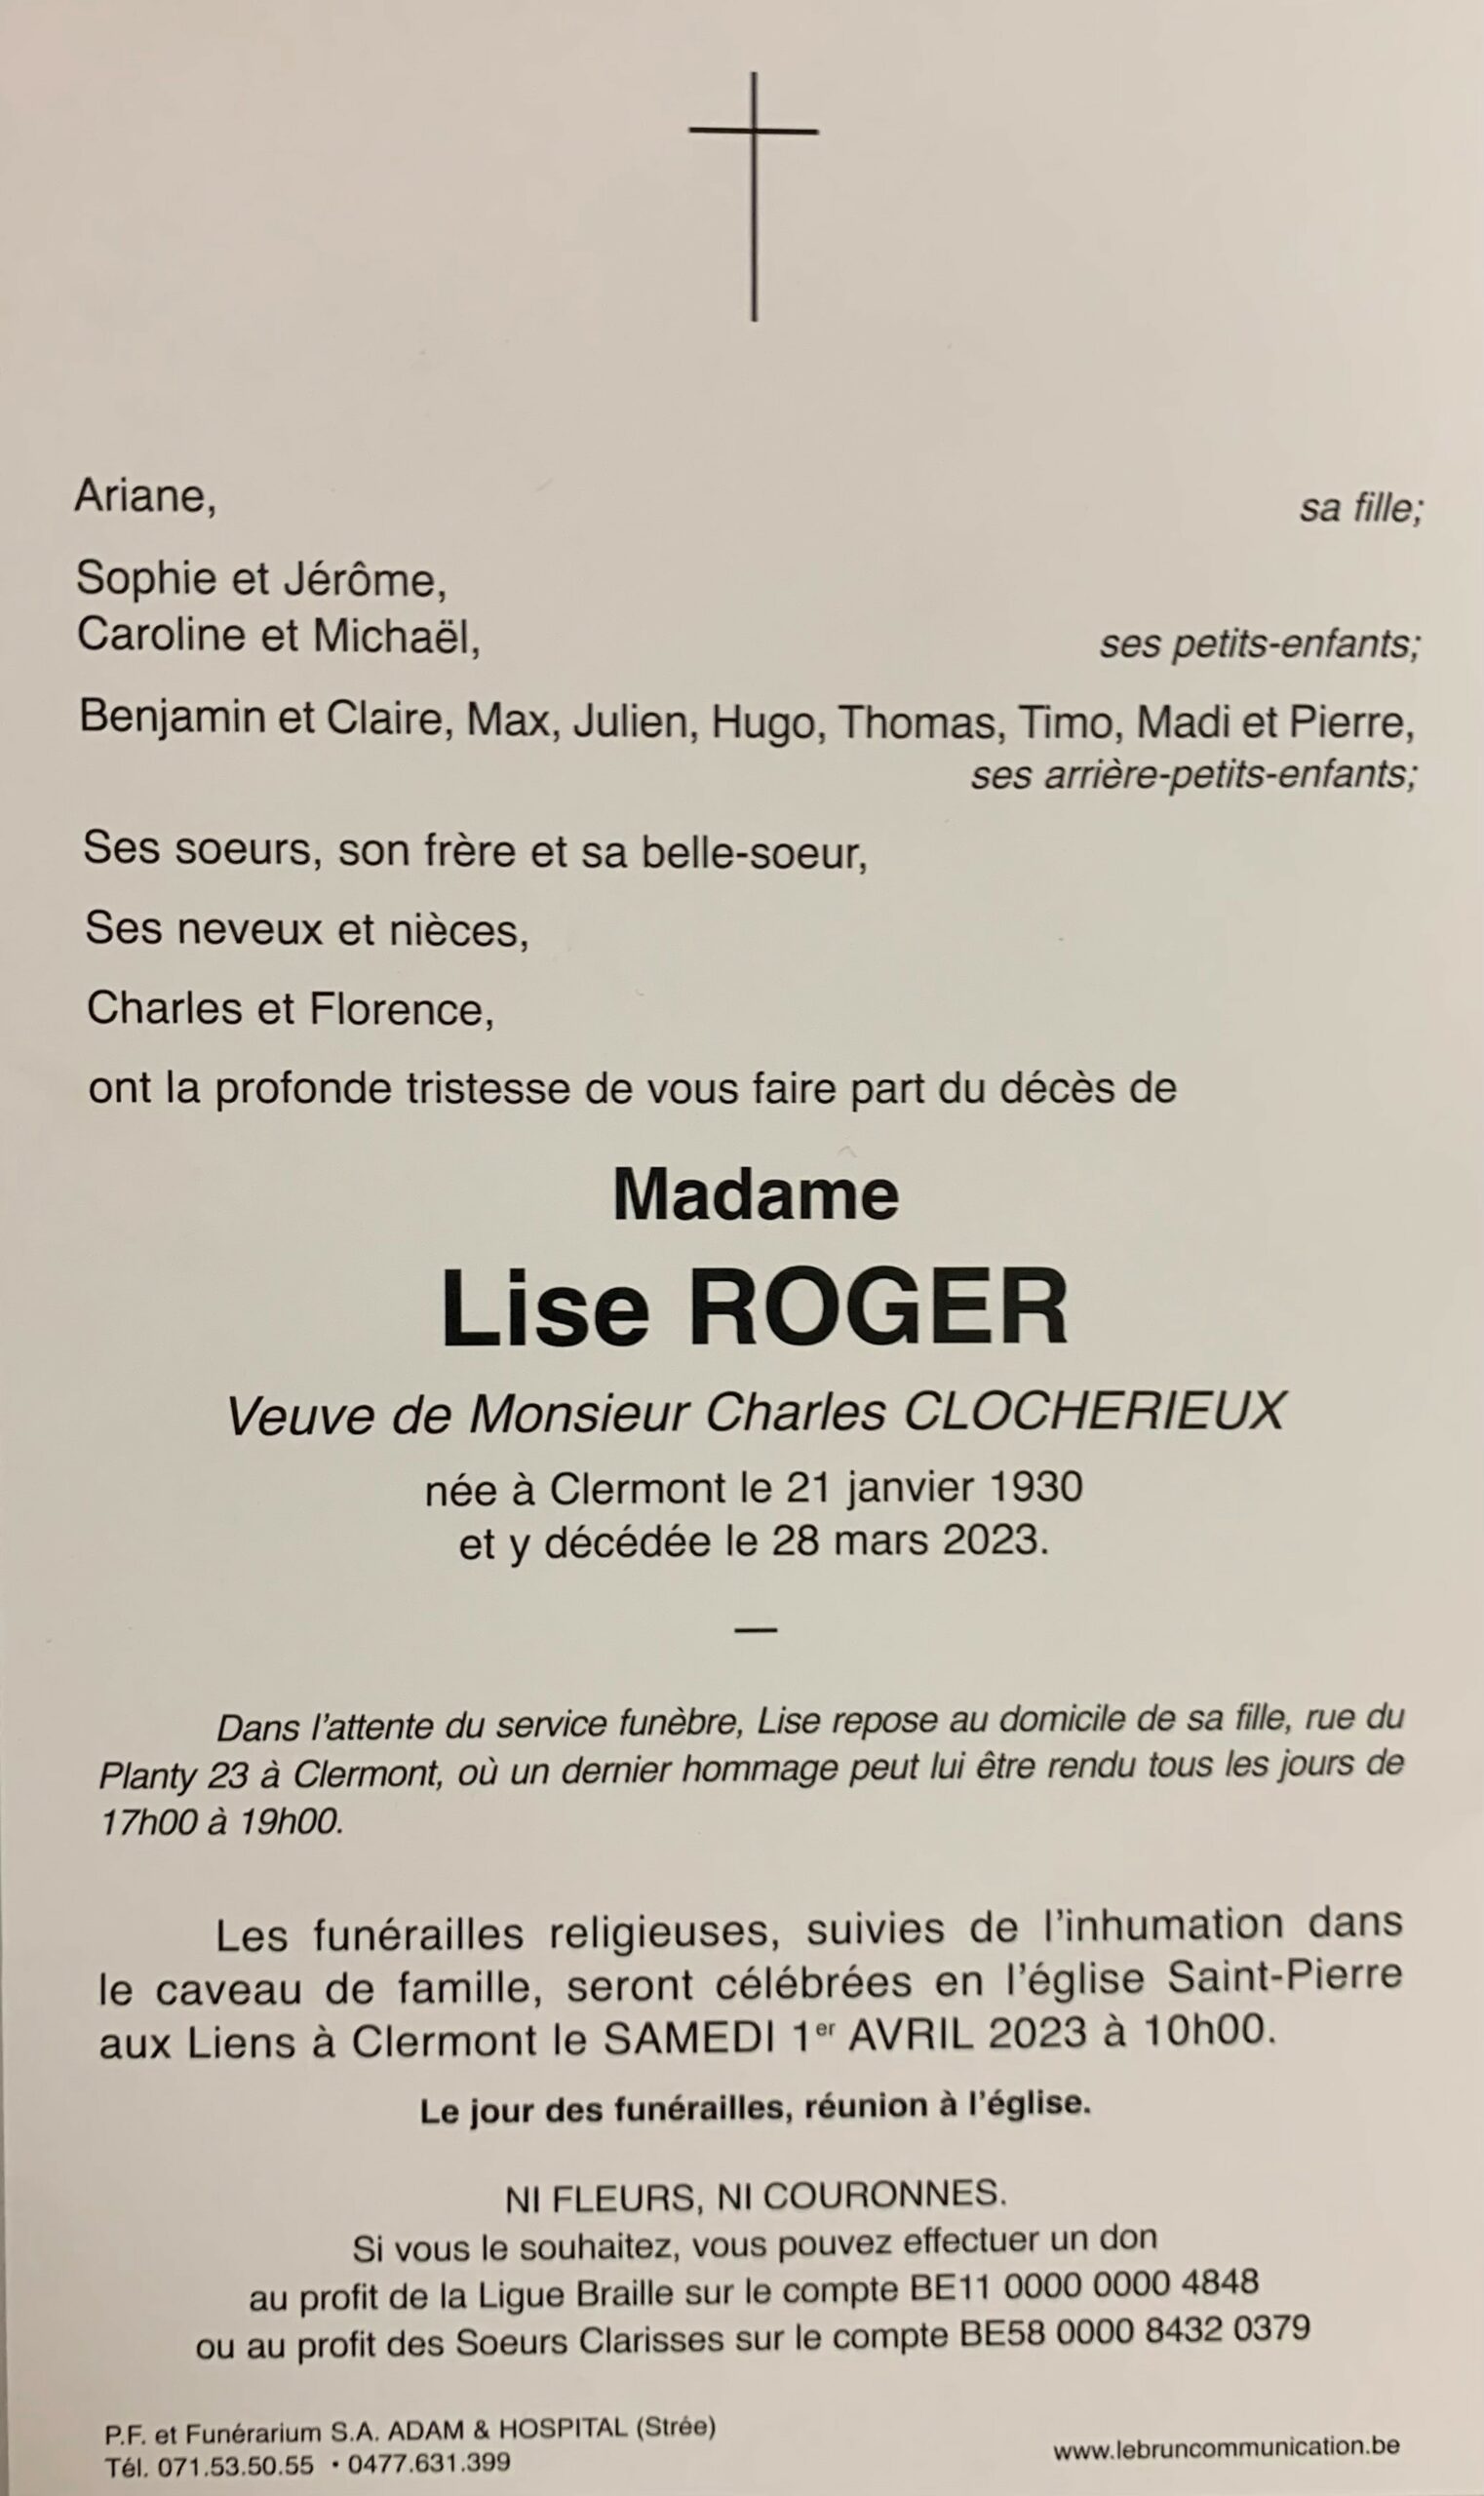 Madame Lise ROGER Veuve de Monsieur Charles CLOCHERIEUX nee a Vlermont le 21 janvier 1930 et y decedee le 28 mars 2023 1 scaled 1 | Funérailles Adam Hospital